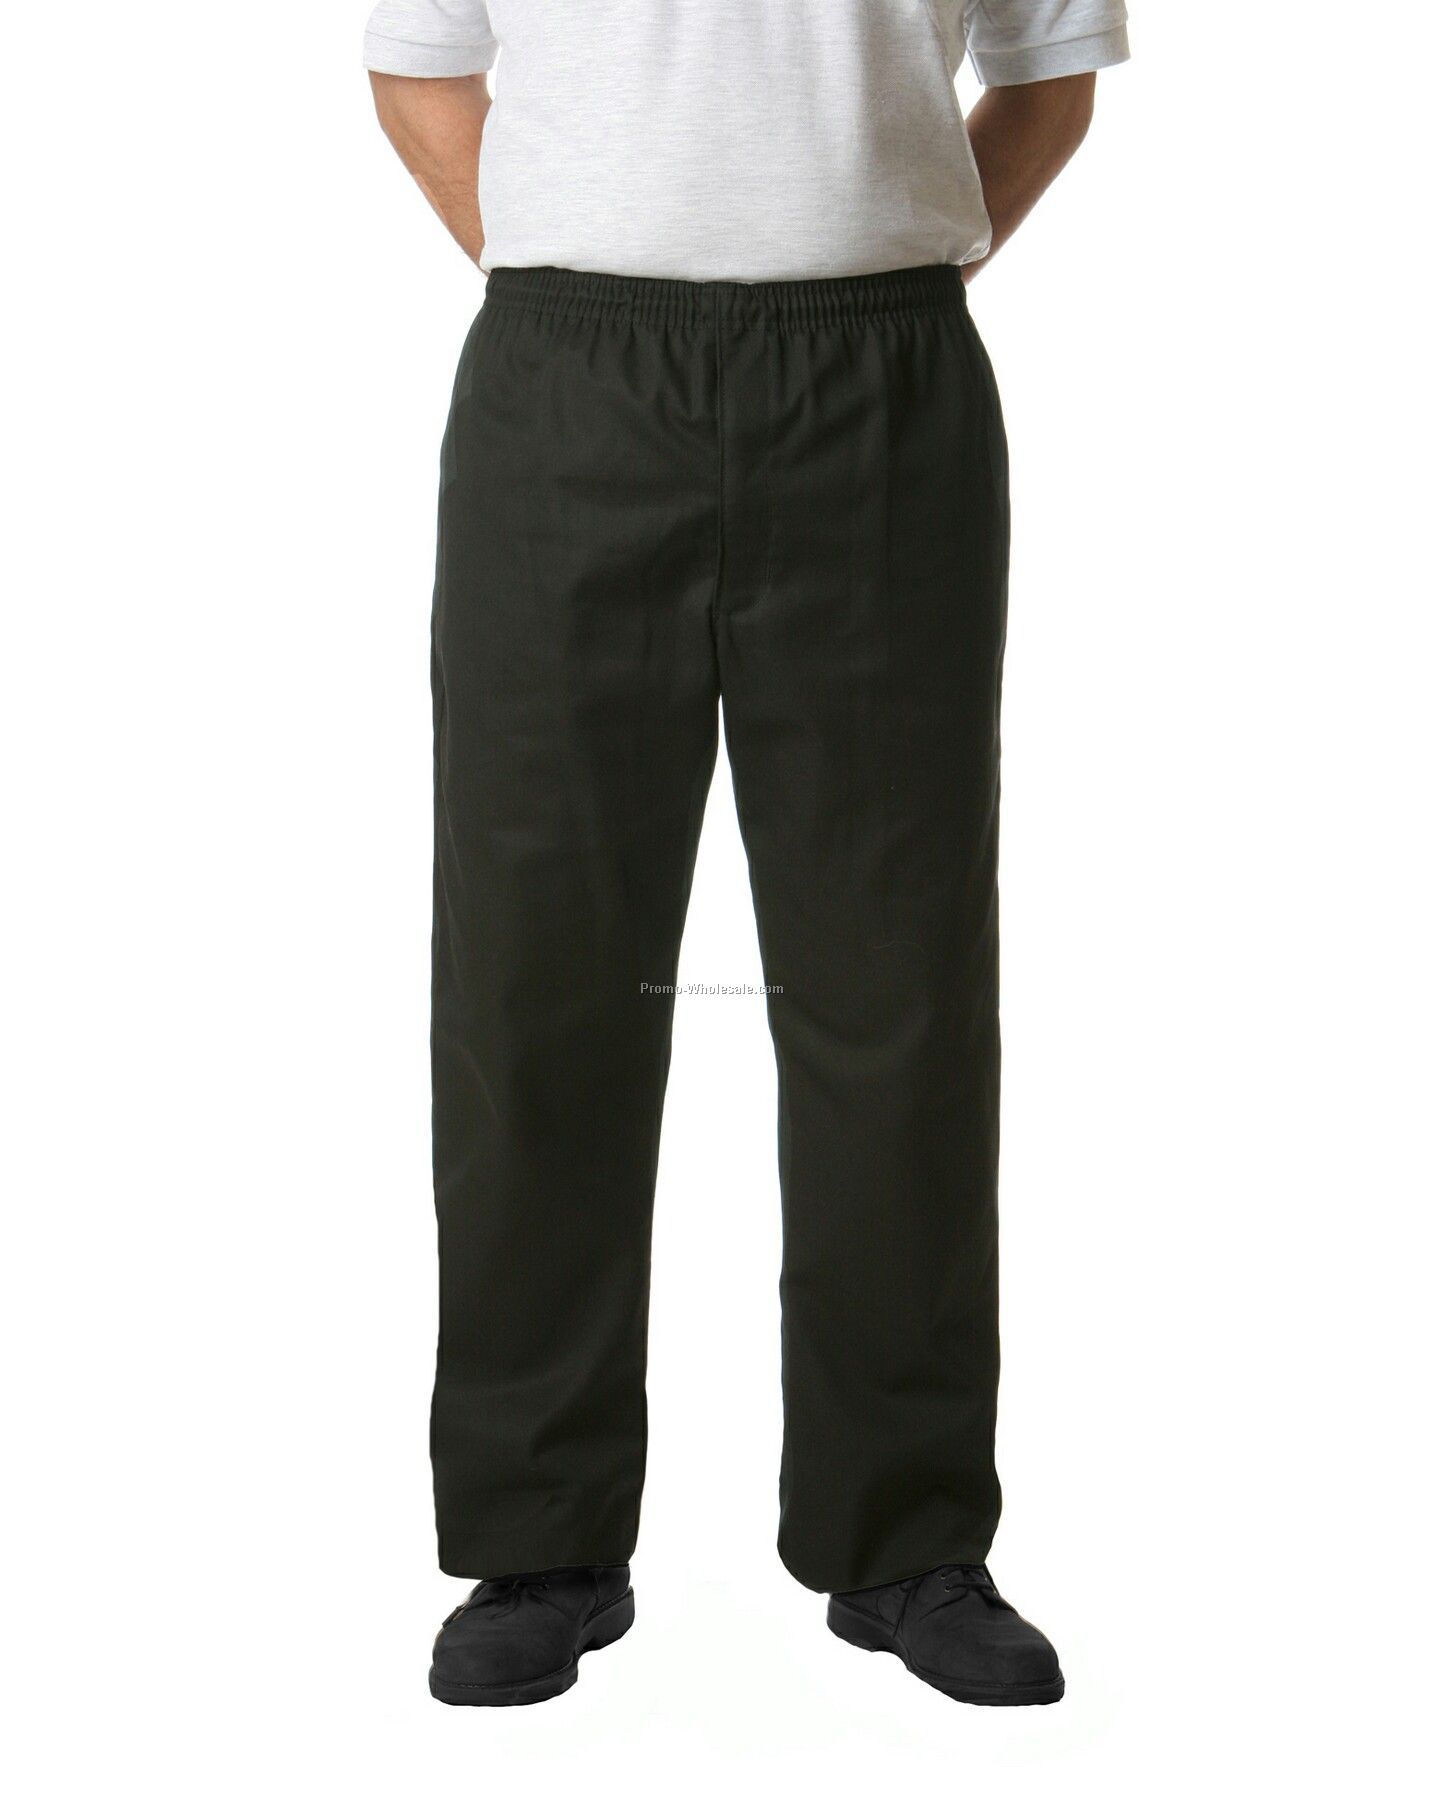 Chef Baggies Pants (Large/ Black & White Chalk Stripe)